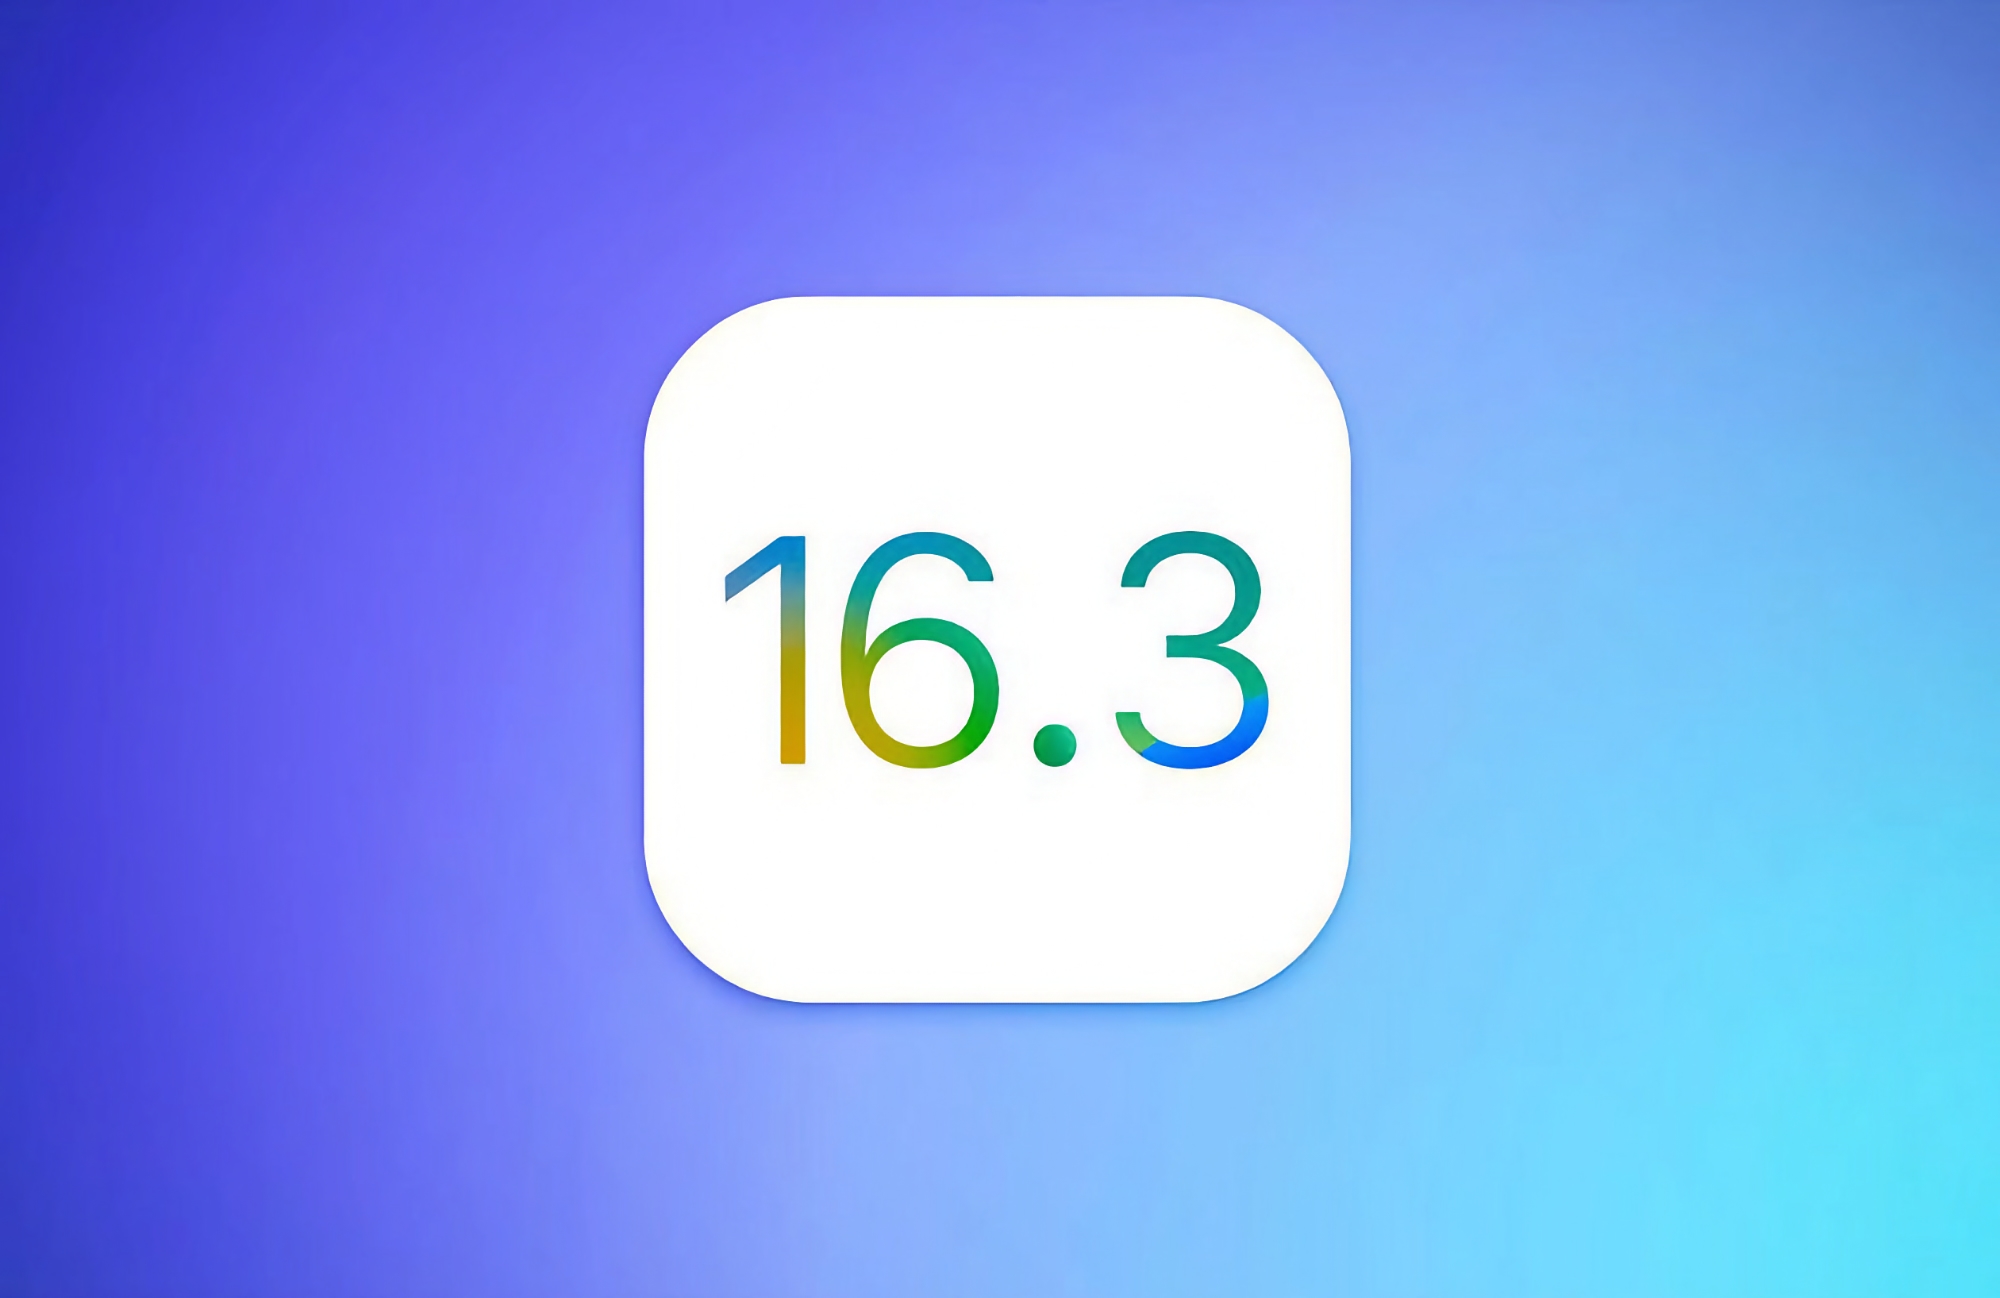 Apple выпустила iOS 16.3: ключи безопасности, поддержка HomePod, новые обои и исправление ошибок